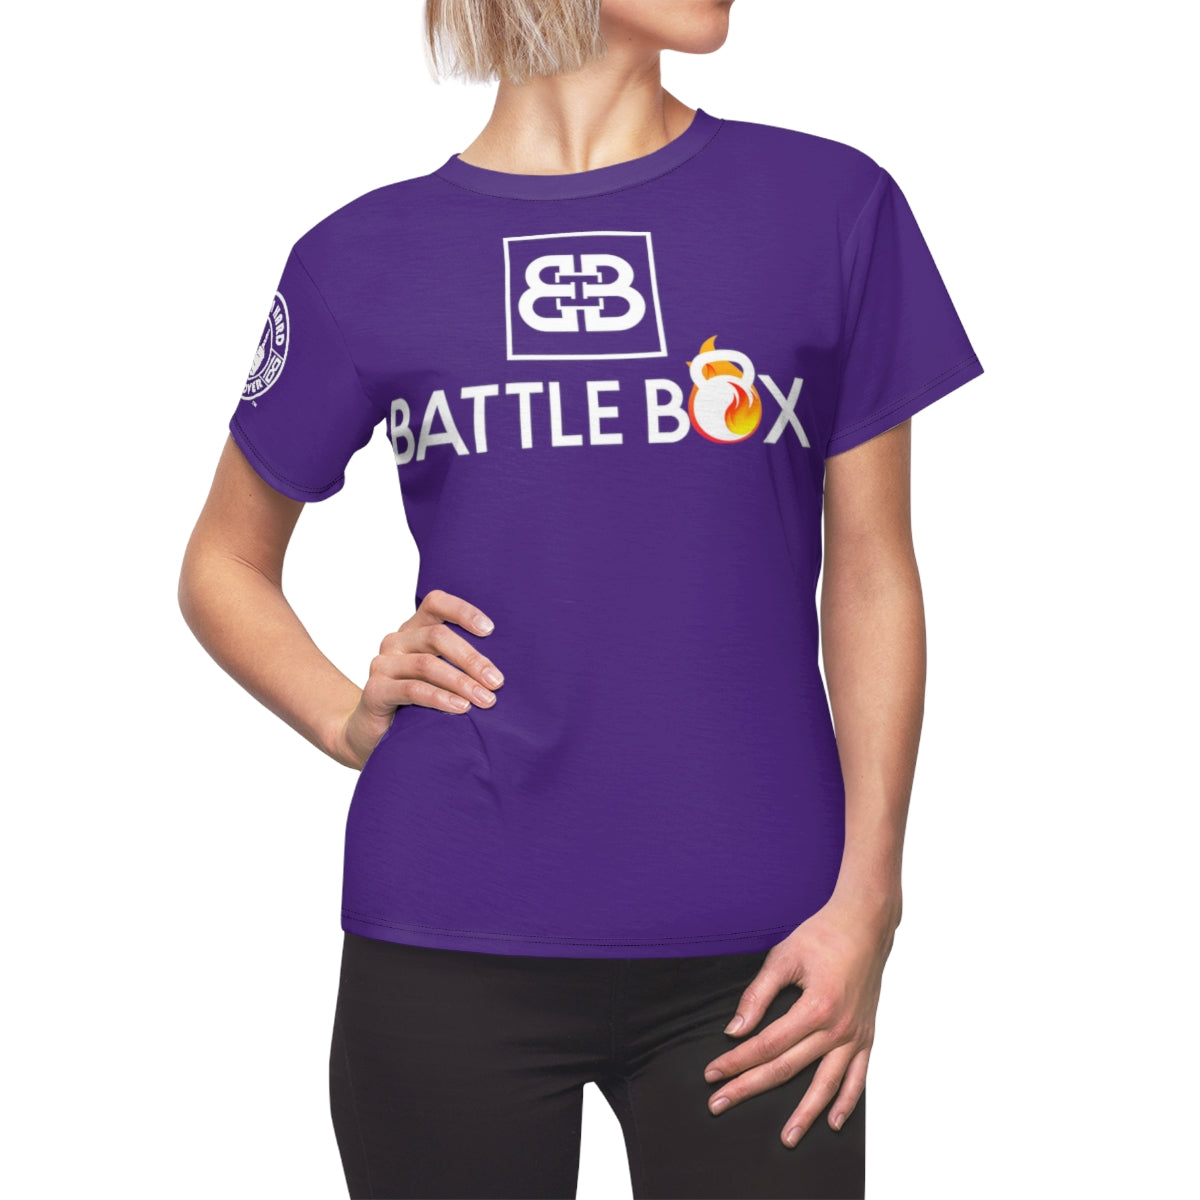 Battle Box Puprle Women's T-Shirt -1A